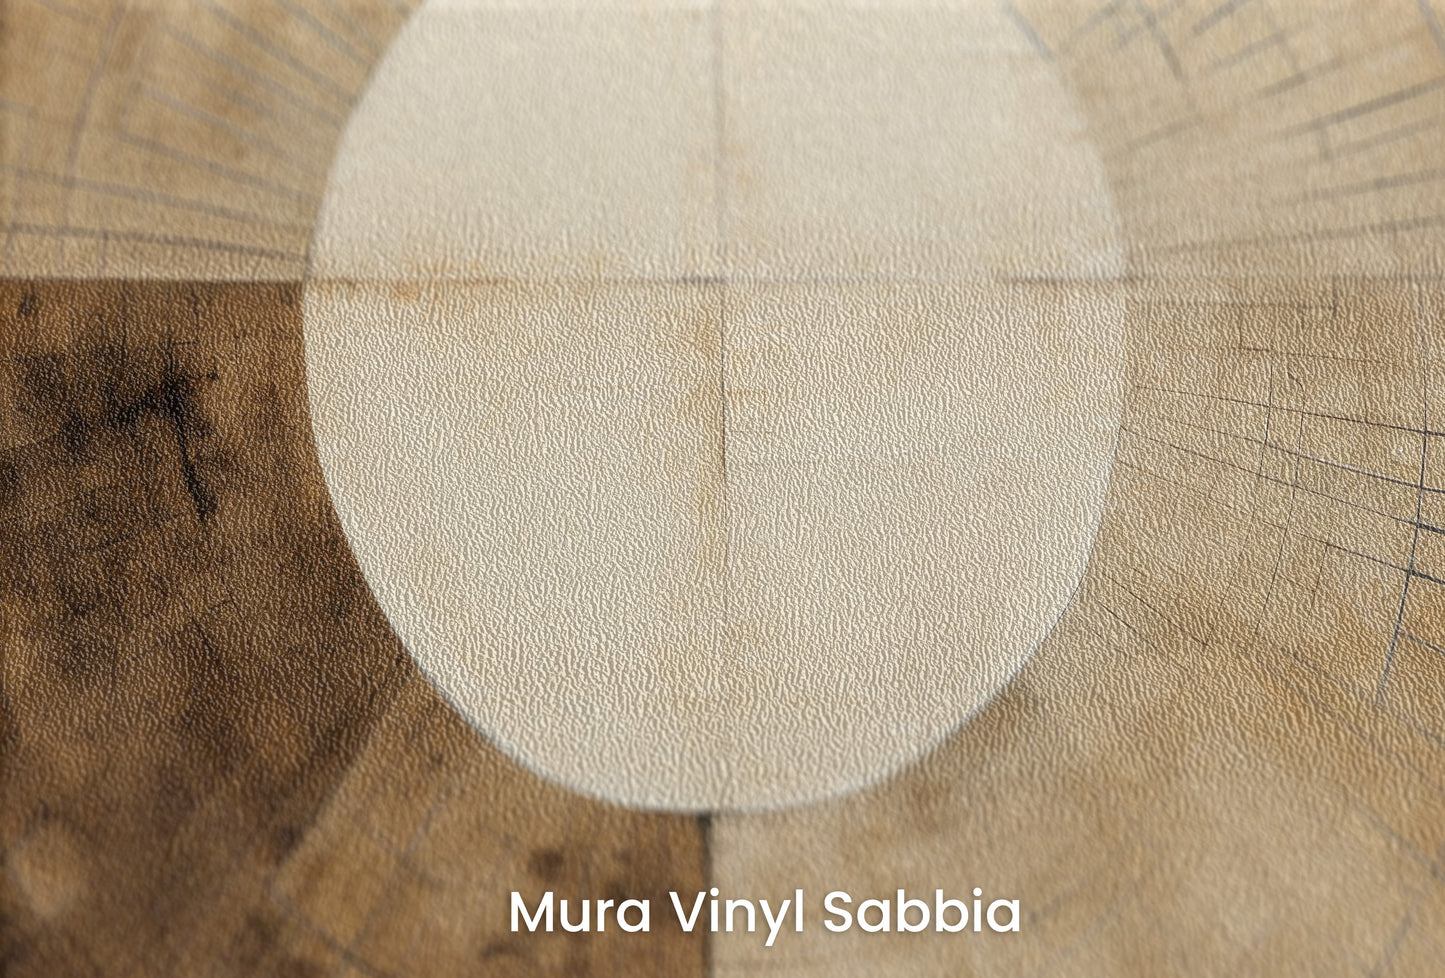 Zbliżenie na artystyczną fototapetę o nazwie AURORA DISC HARMONY na podłożu Mura Vinyl Sabbia struktura grubego ziarna piasku.